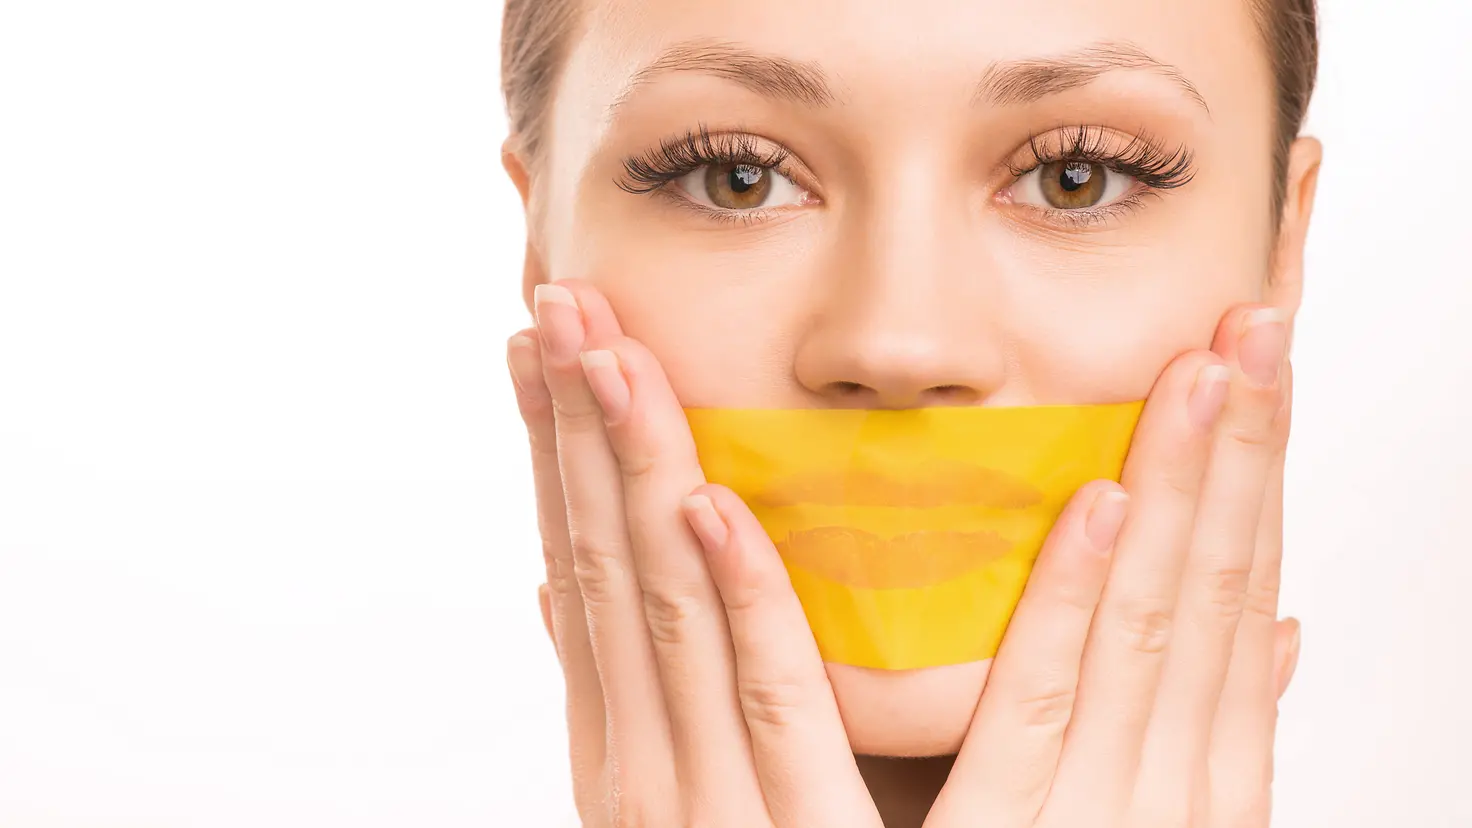 Zu sehen ist eine Frau, die sich den Mund mit einem gelben Klebeband zugeklebt hat